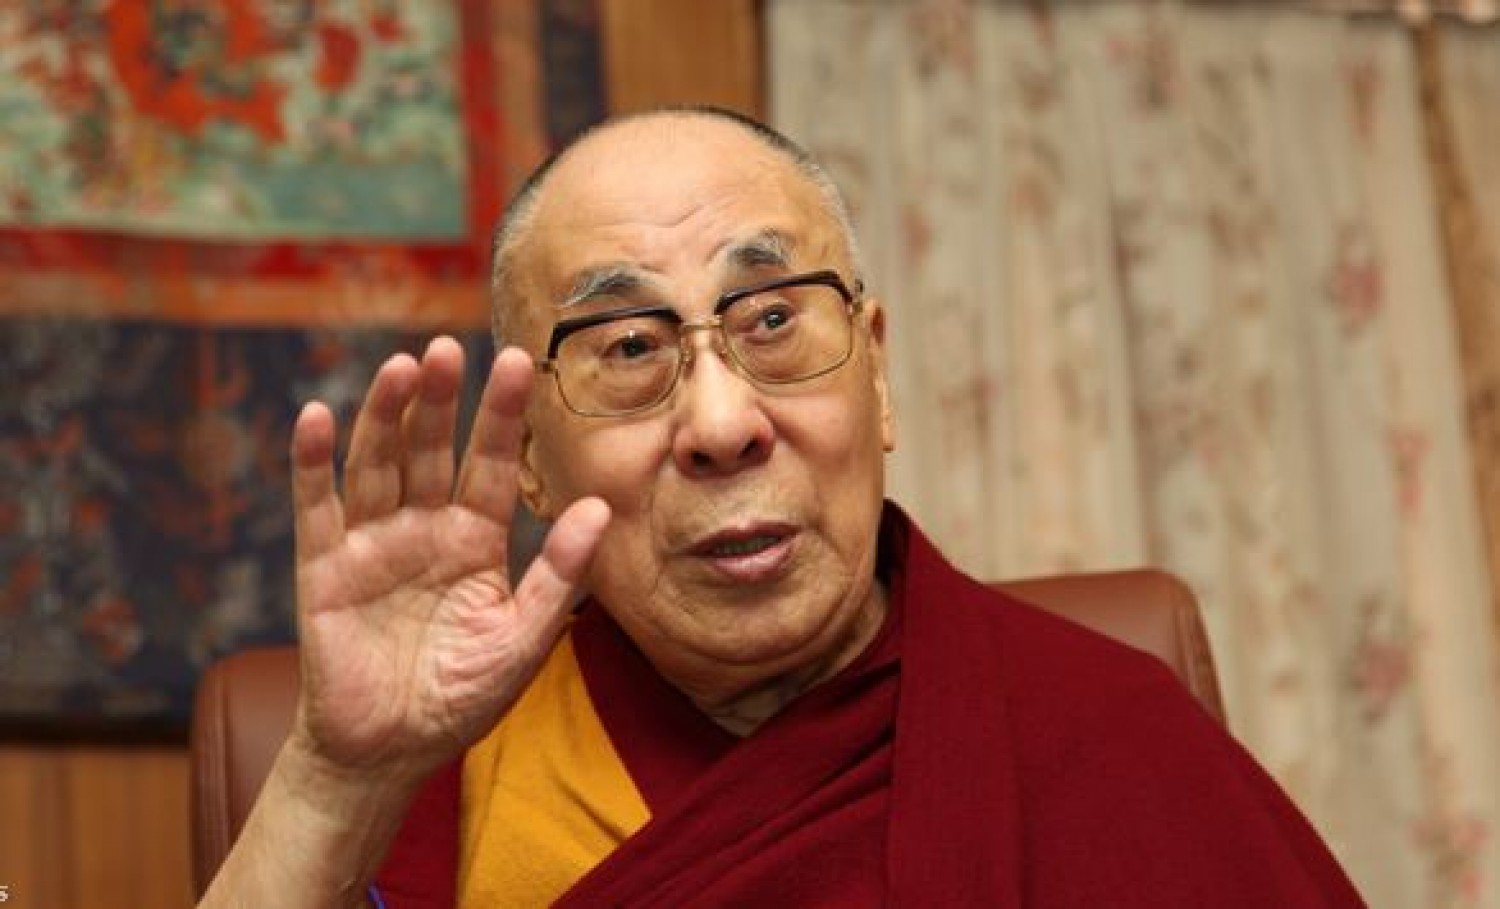 Kórházba került a dalai láma